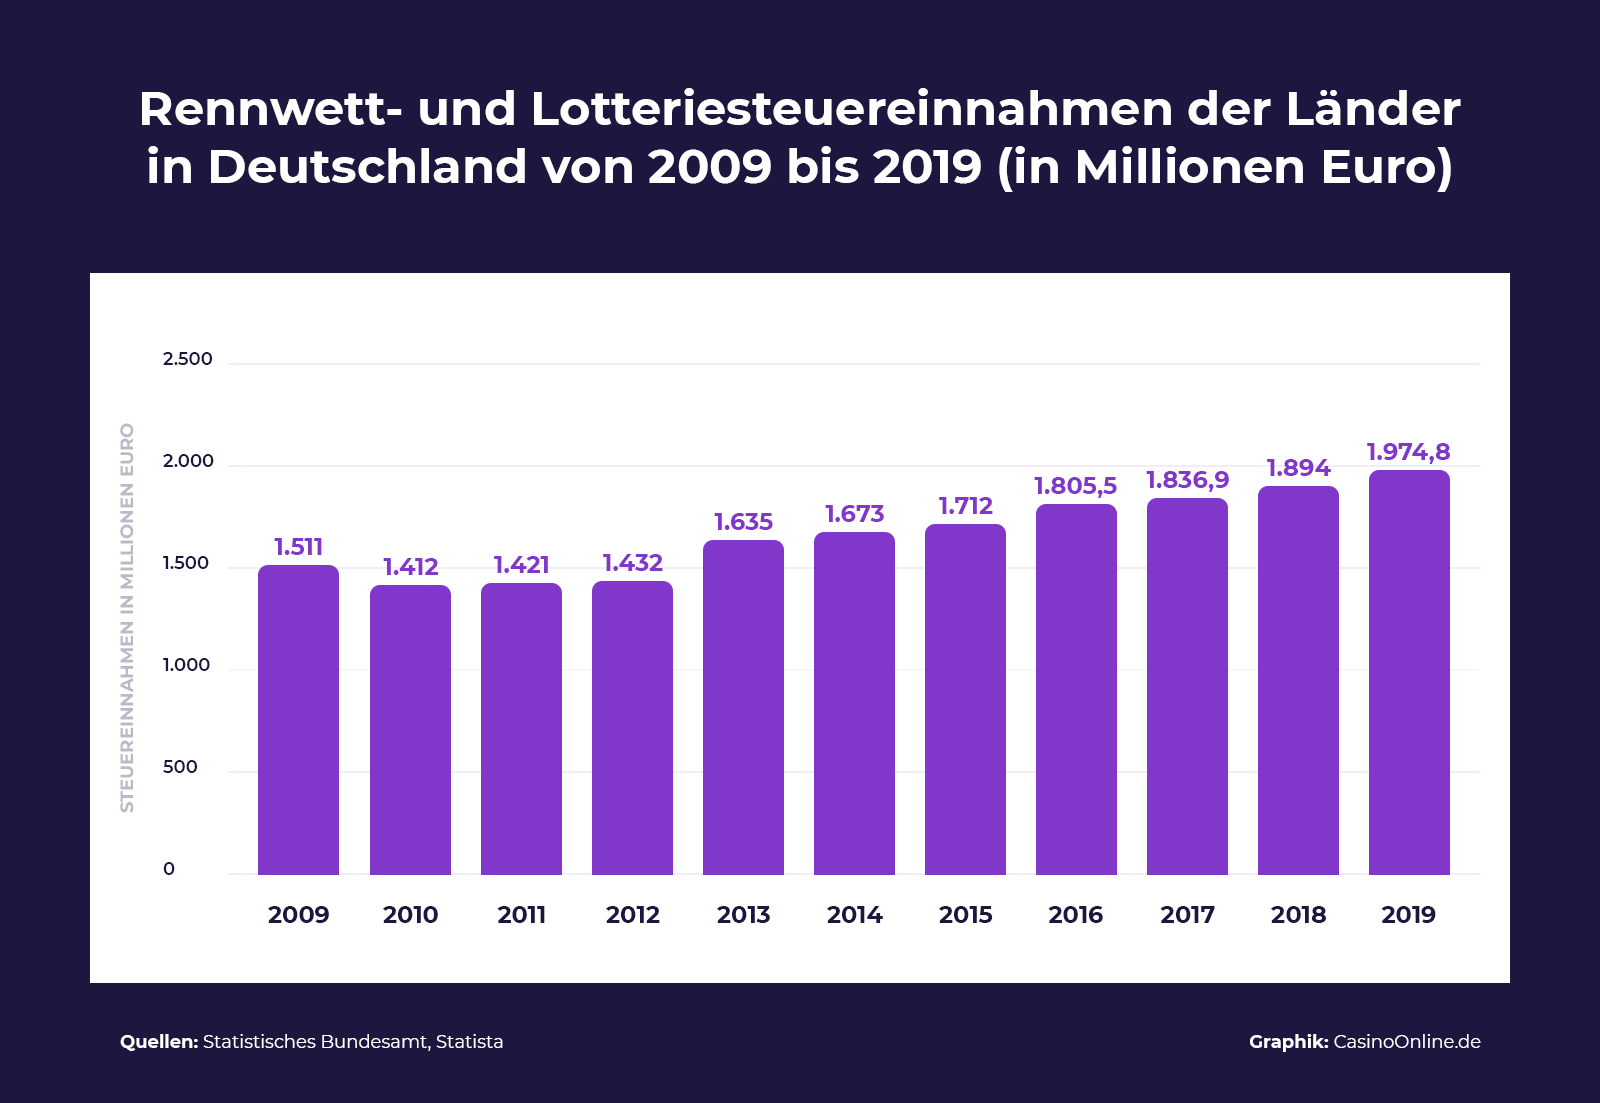 Rennwett- und Lotteriesteuereinnahmen der Länder in Deutschland von 2009 bis 2019 in Millionen Euro